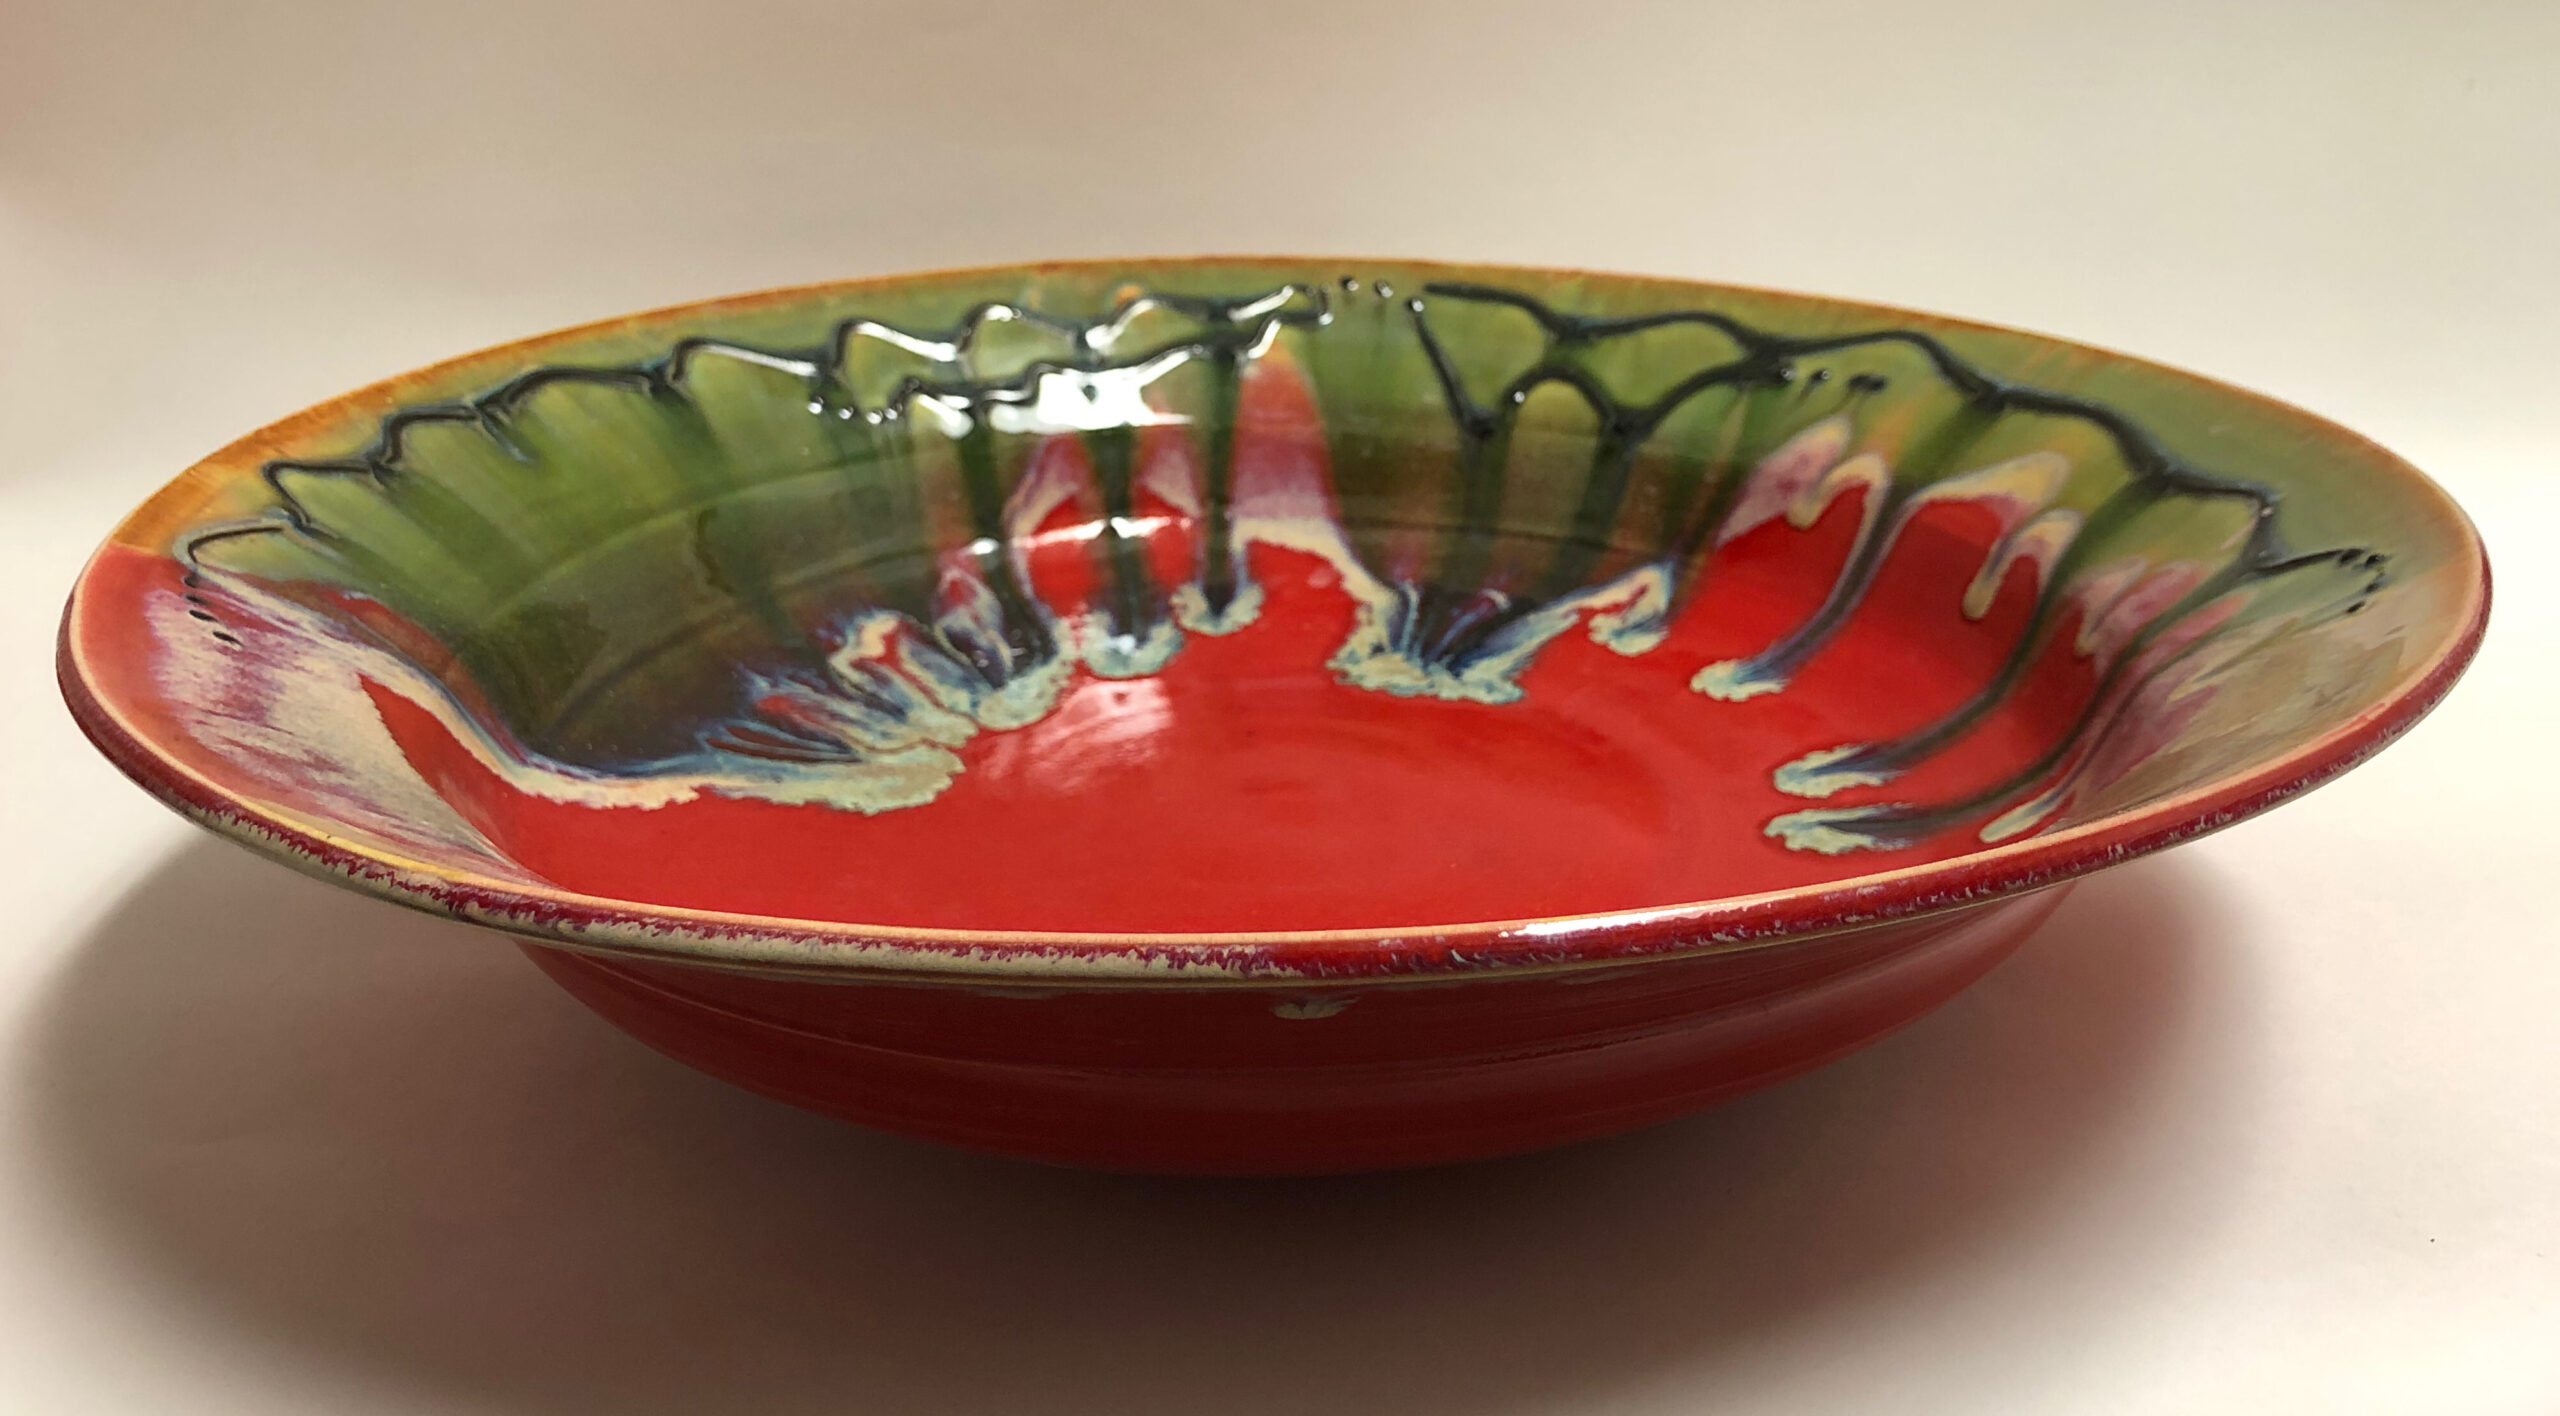 Karen c large red bowl with black slip